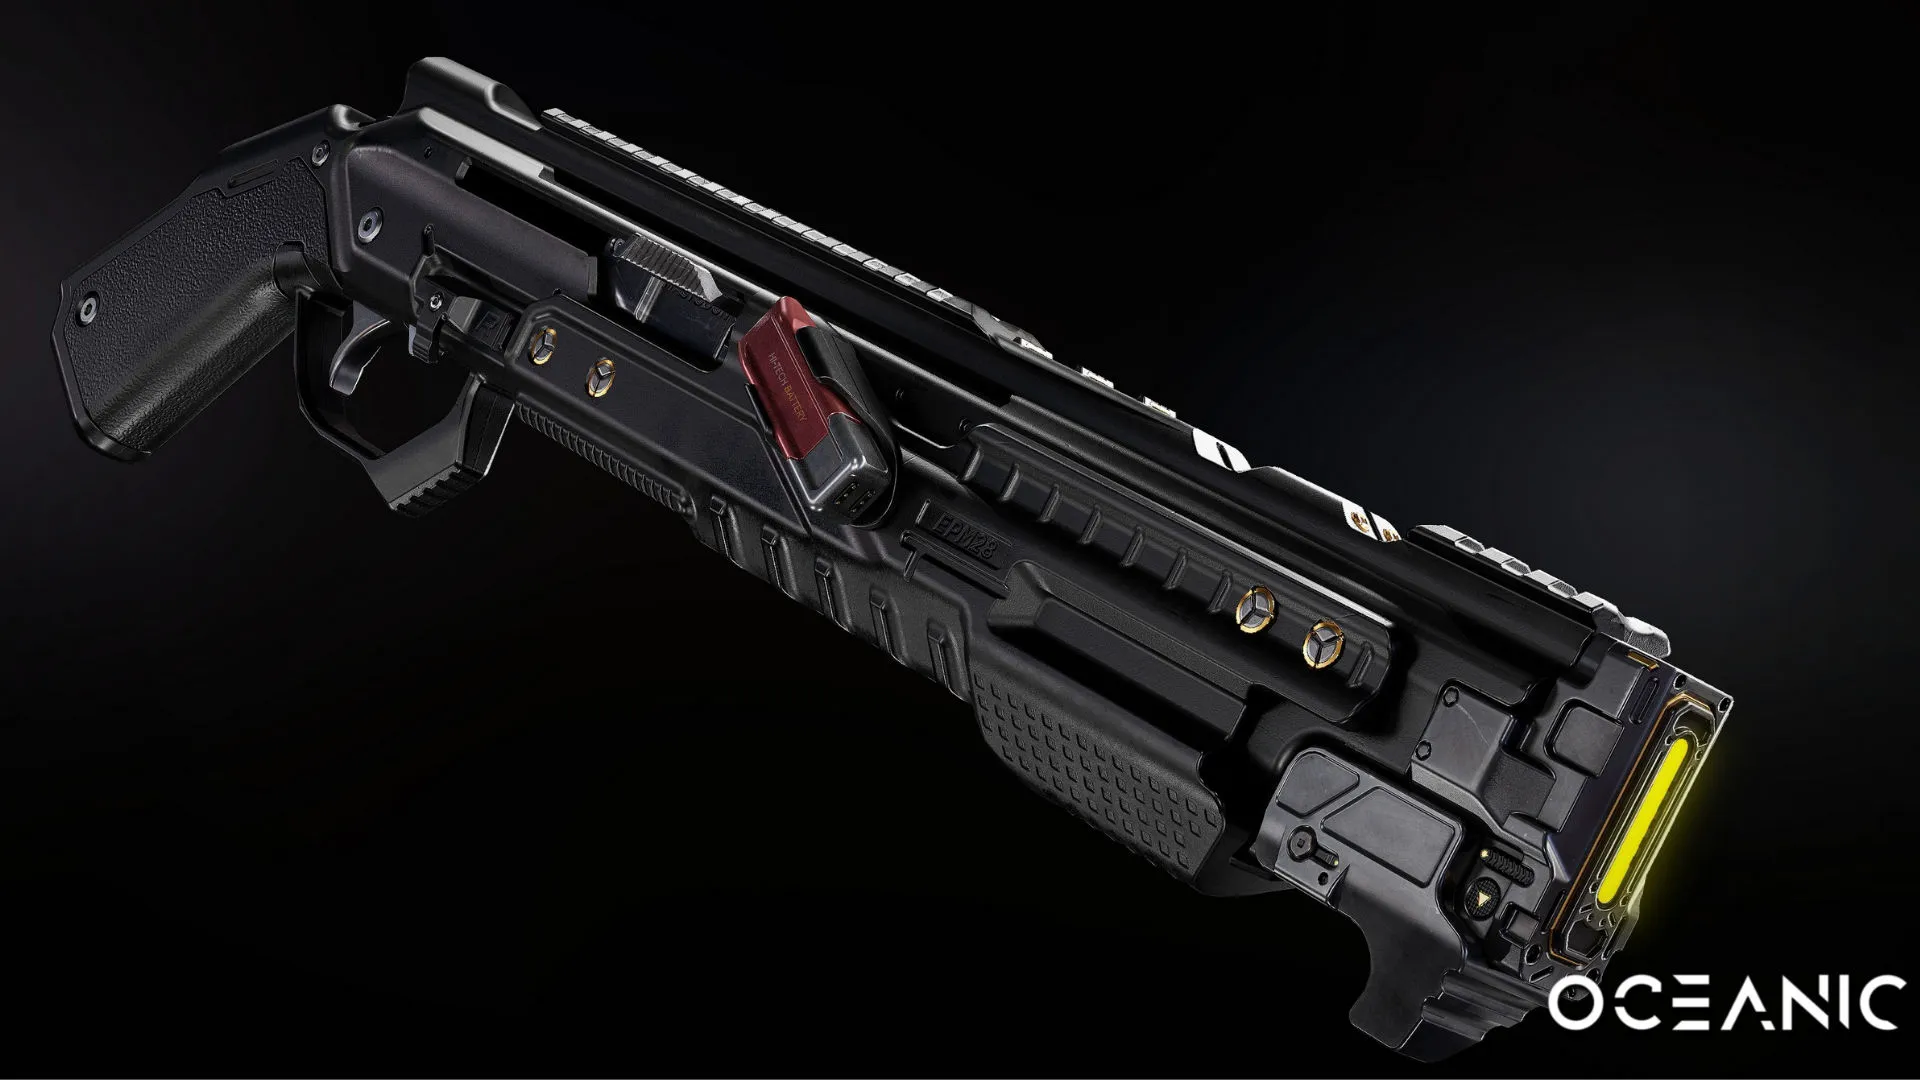 Дробовик в этой компьютерной игре, возможно, вдохновил создателей АК-47 на новый дизайн оружия